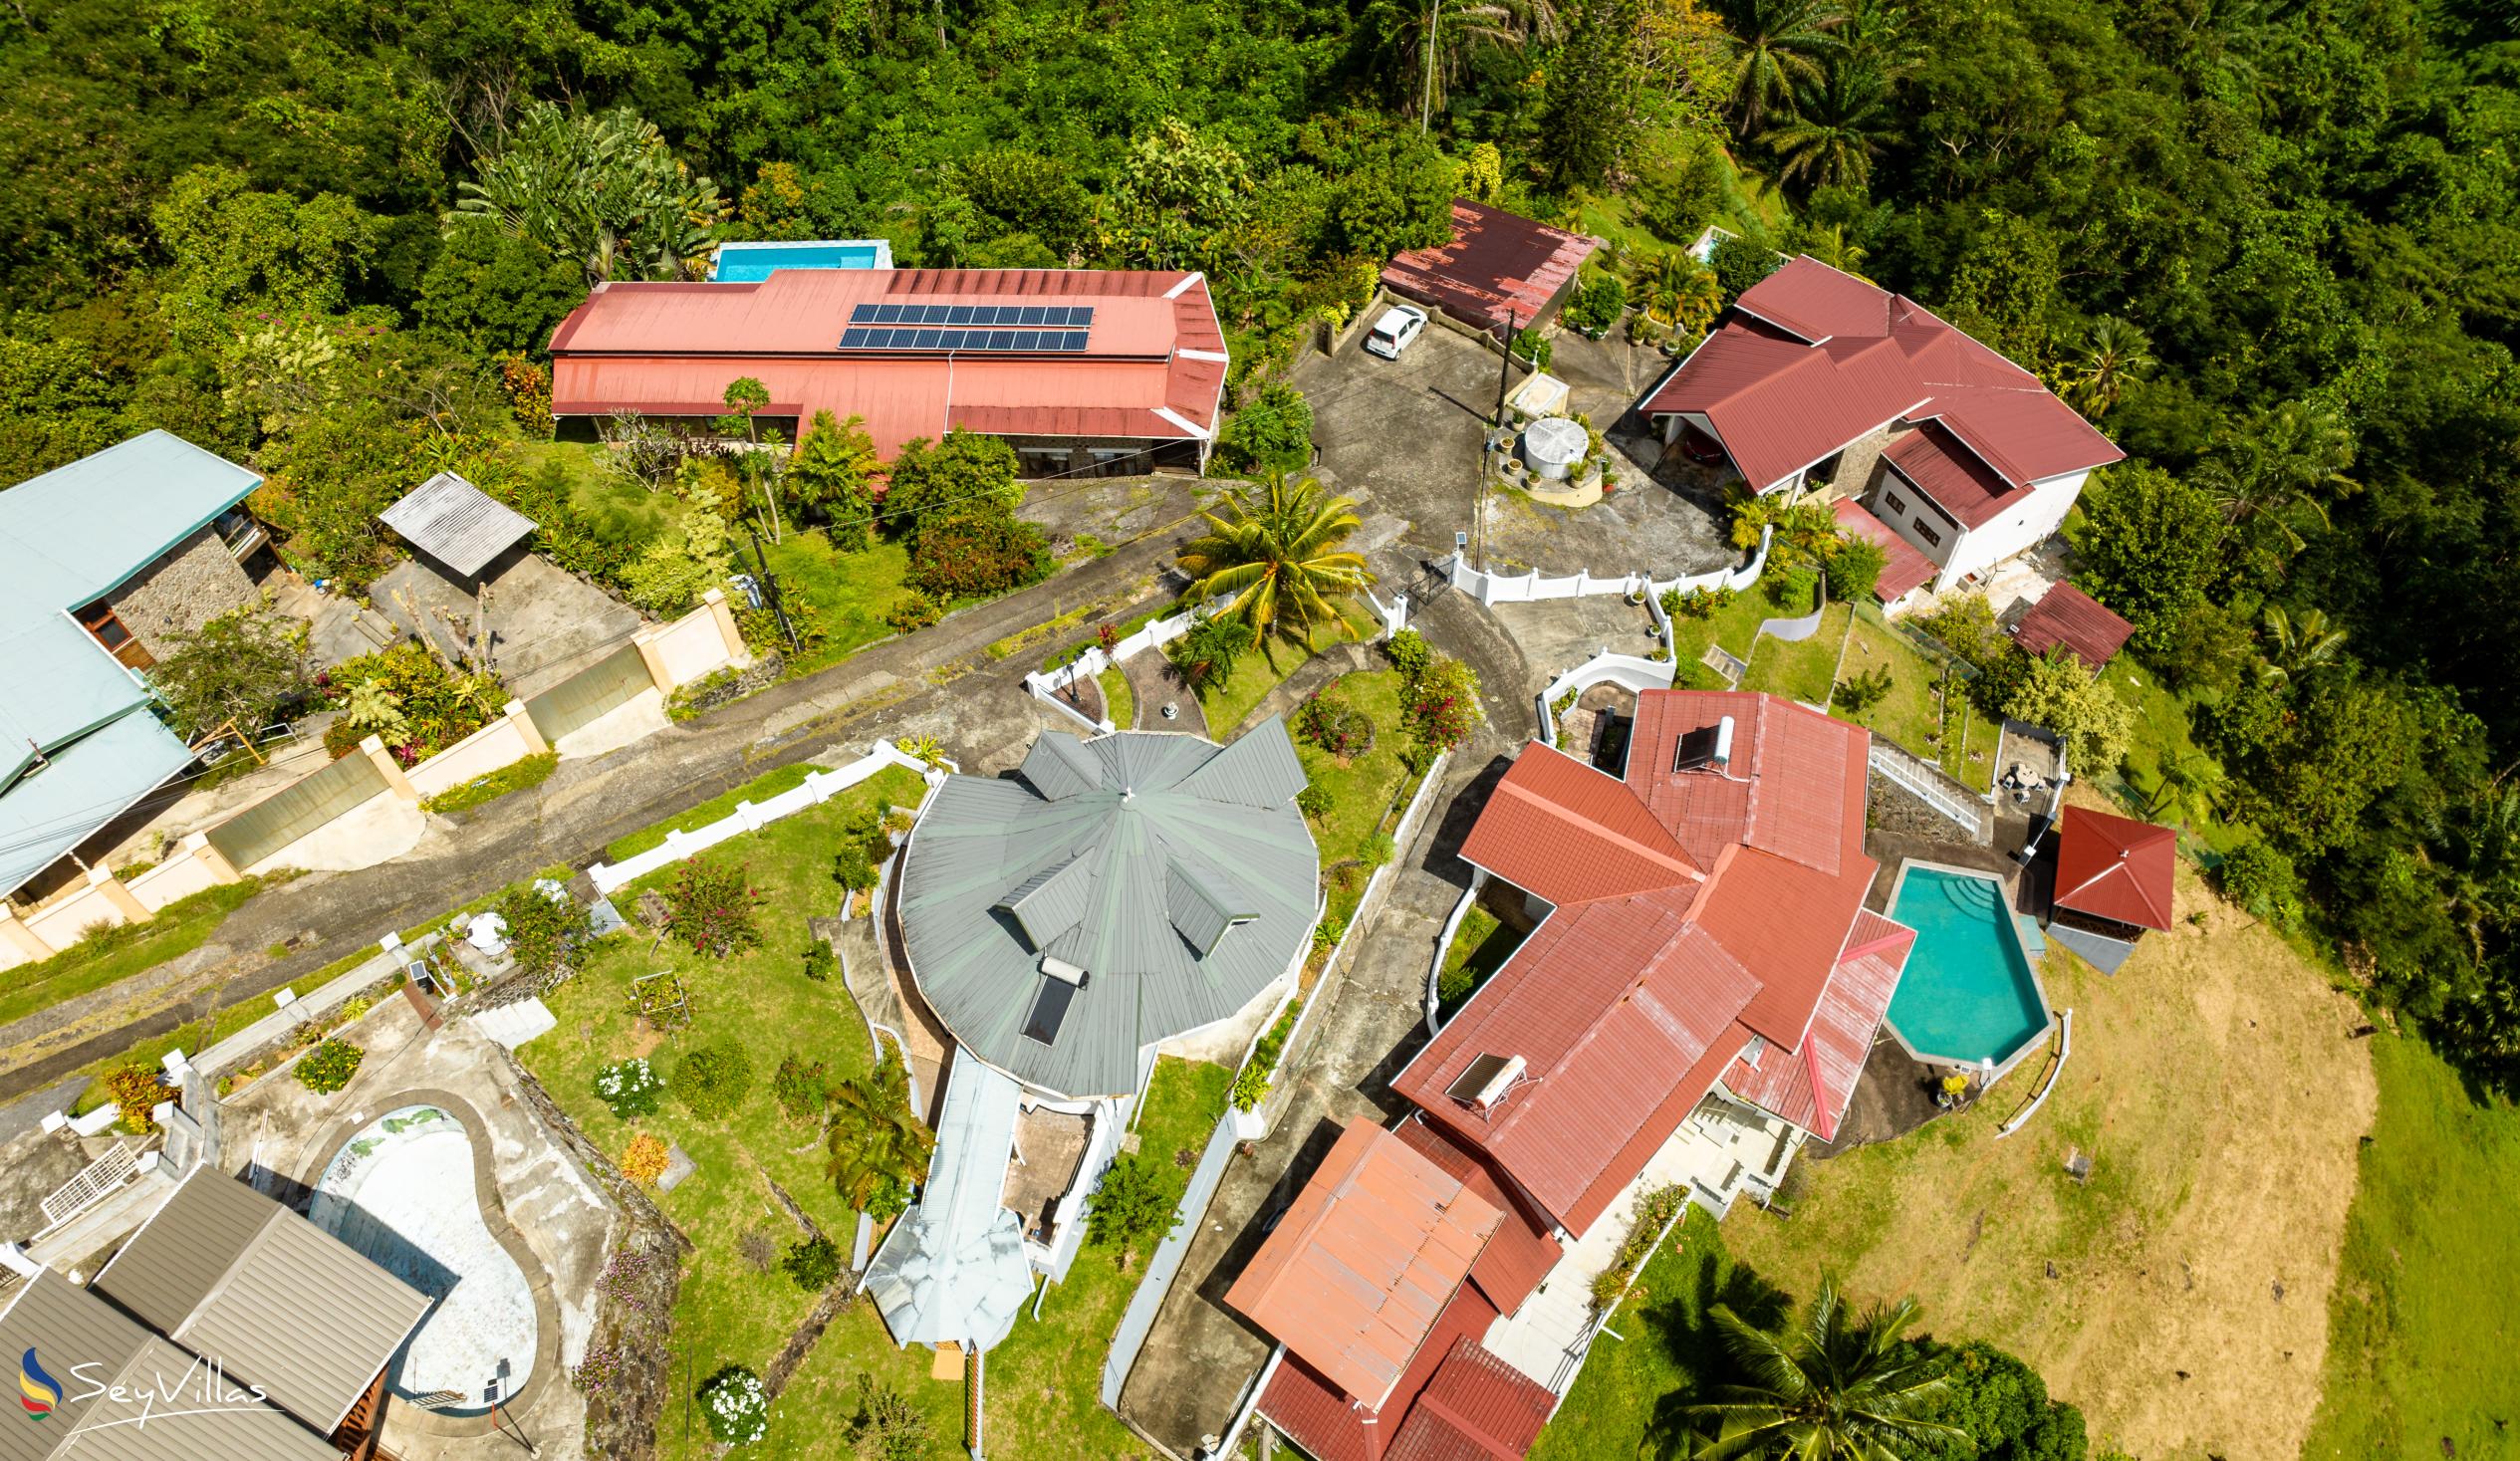 Photo 9: Casuarina Hill Villa - Outdoor area - Mahé (Seychelles)